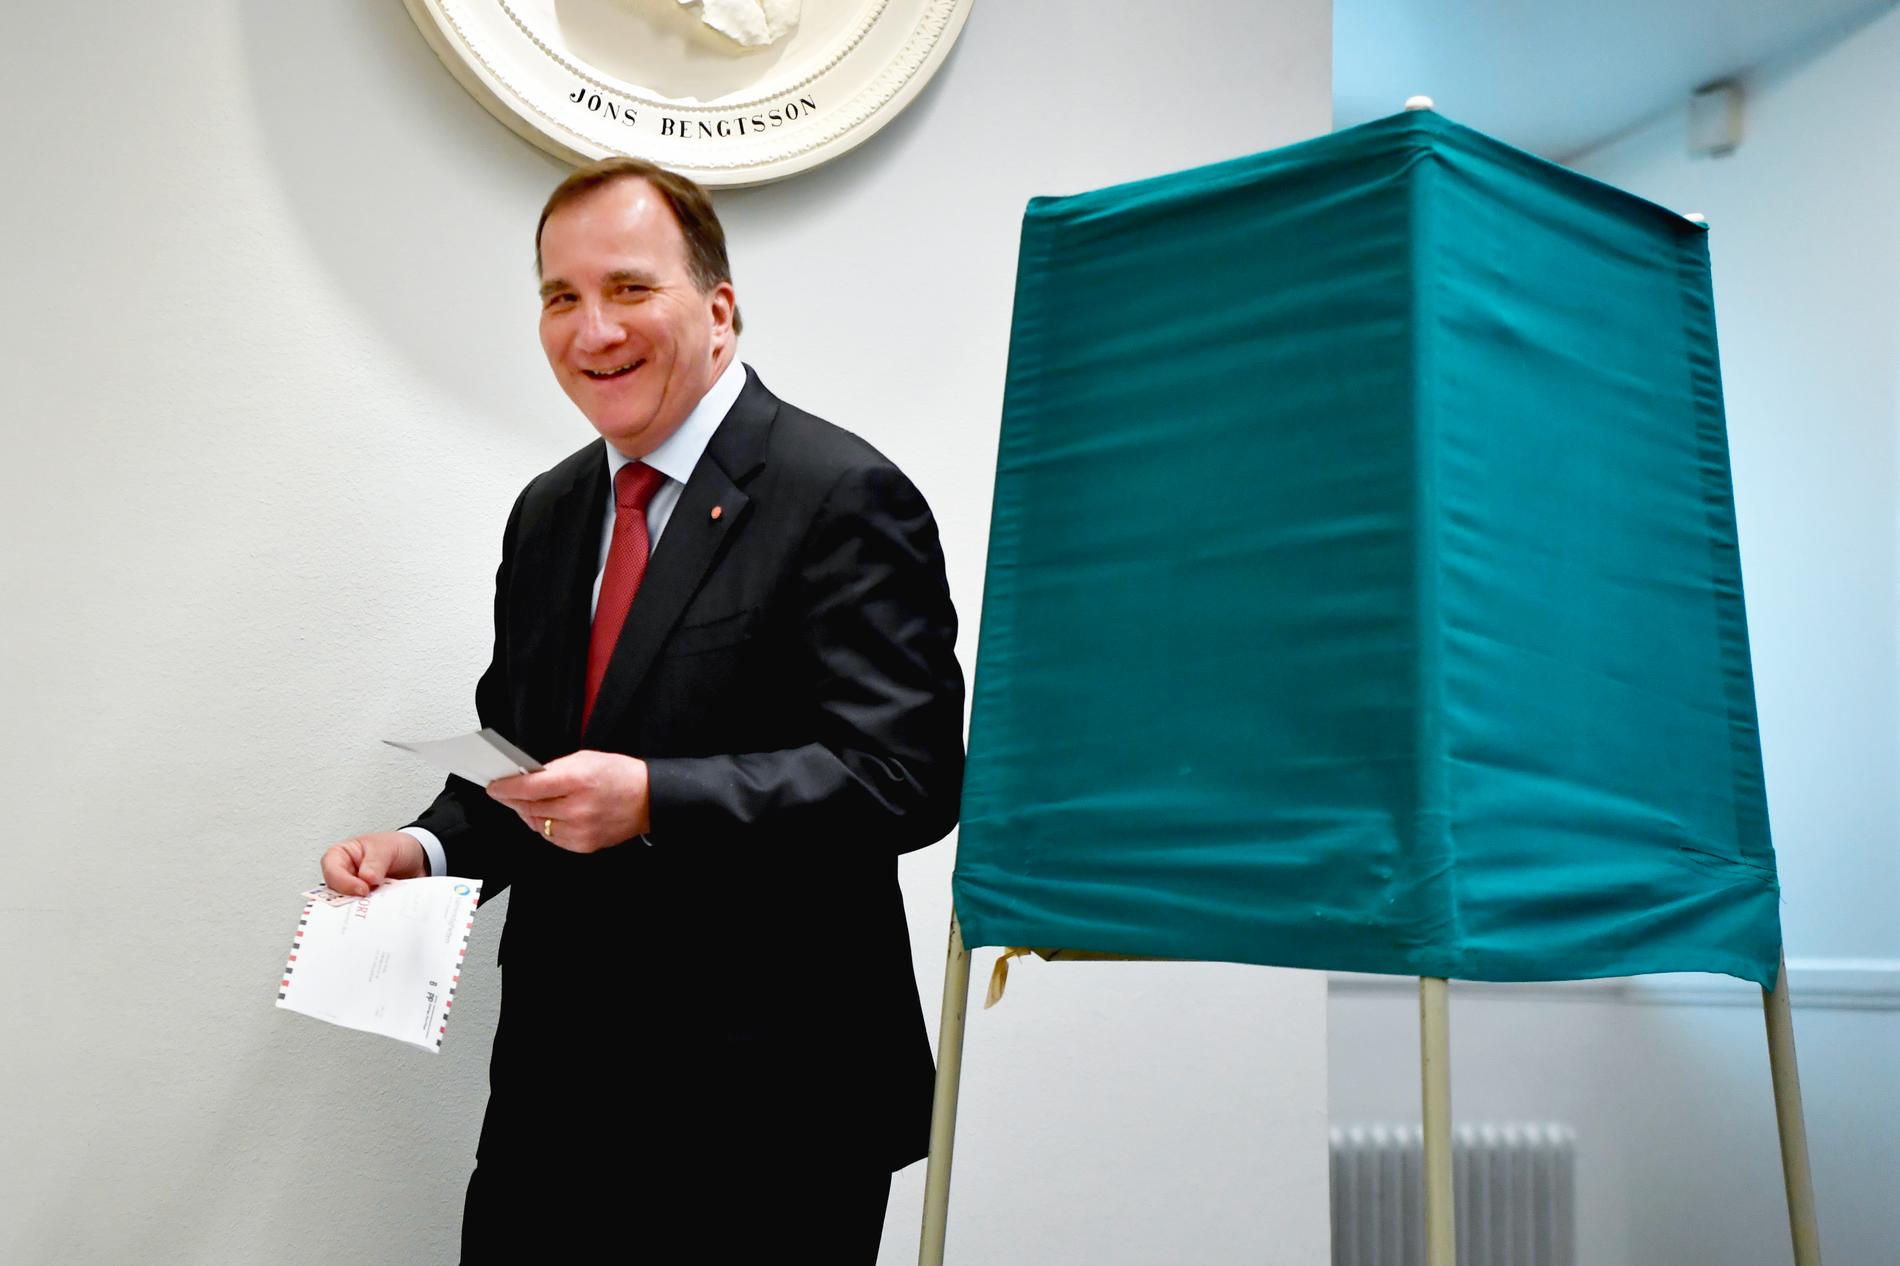 Statsminister Stefan Löfven la sin röst i vallokalen i Riksdagshuset.